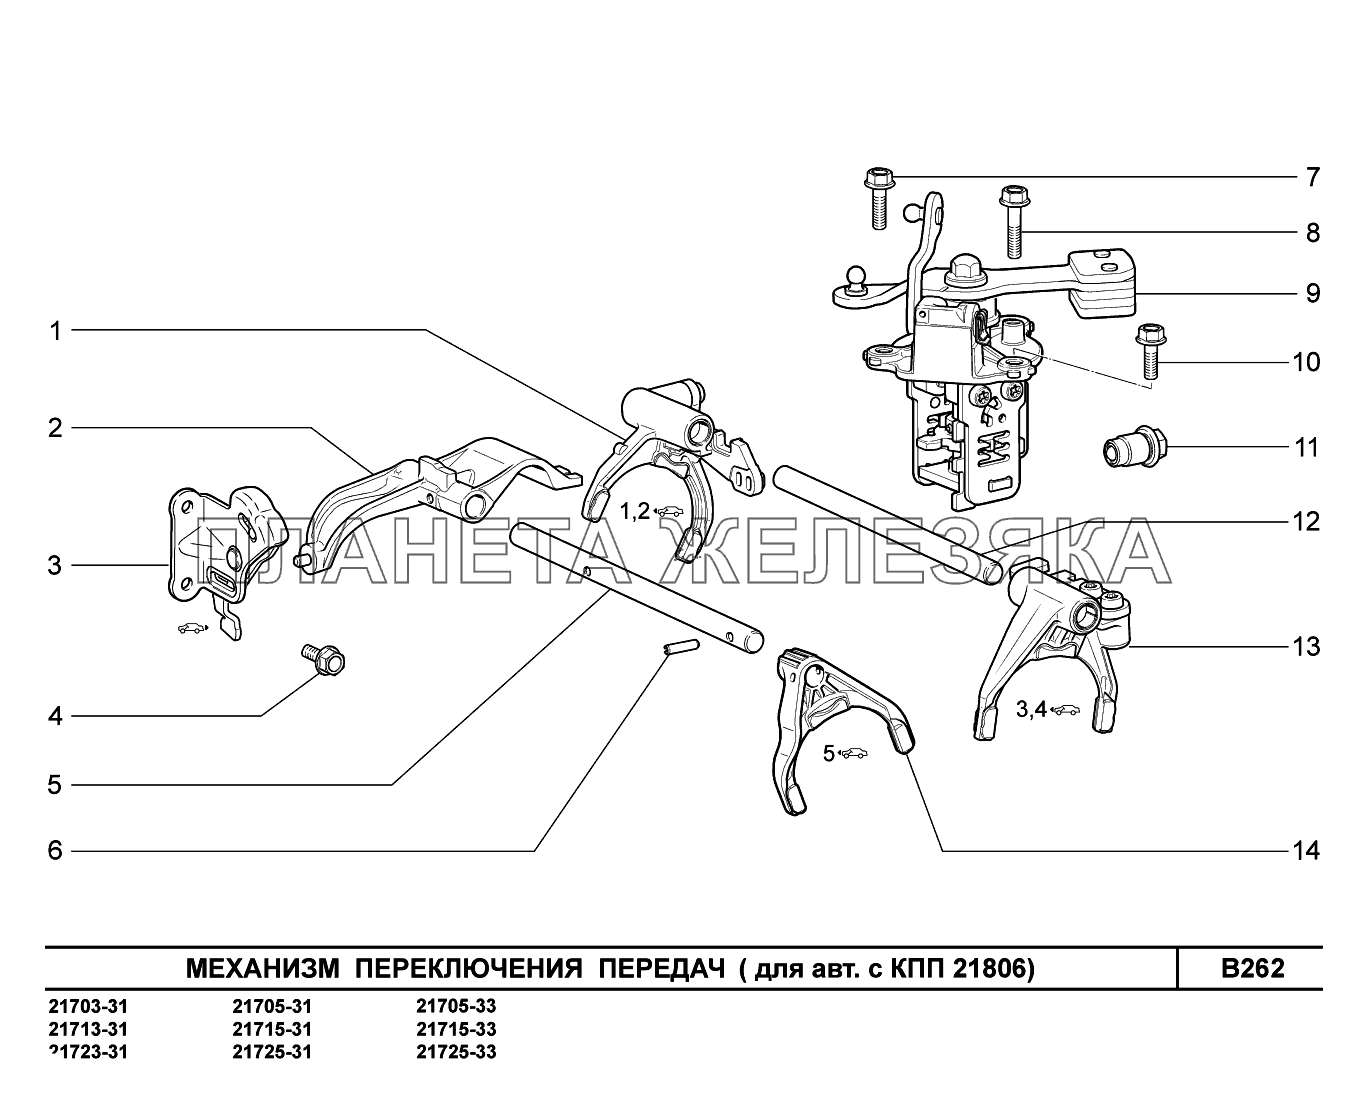 B262. Механизм выбора и переключения передач ВАЗ-2170 